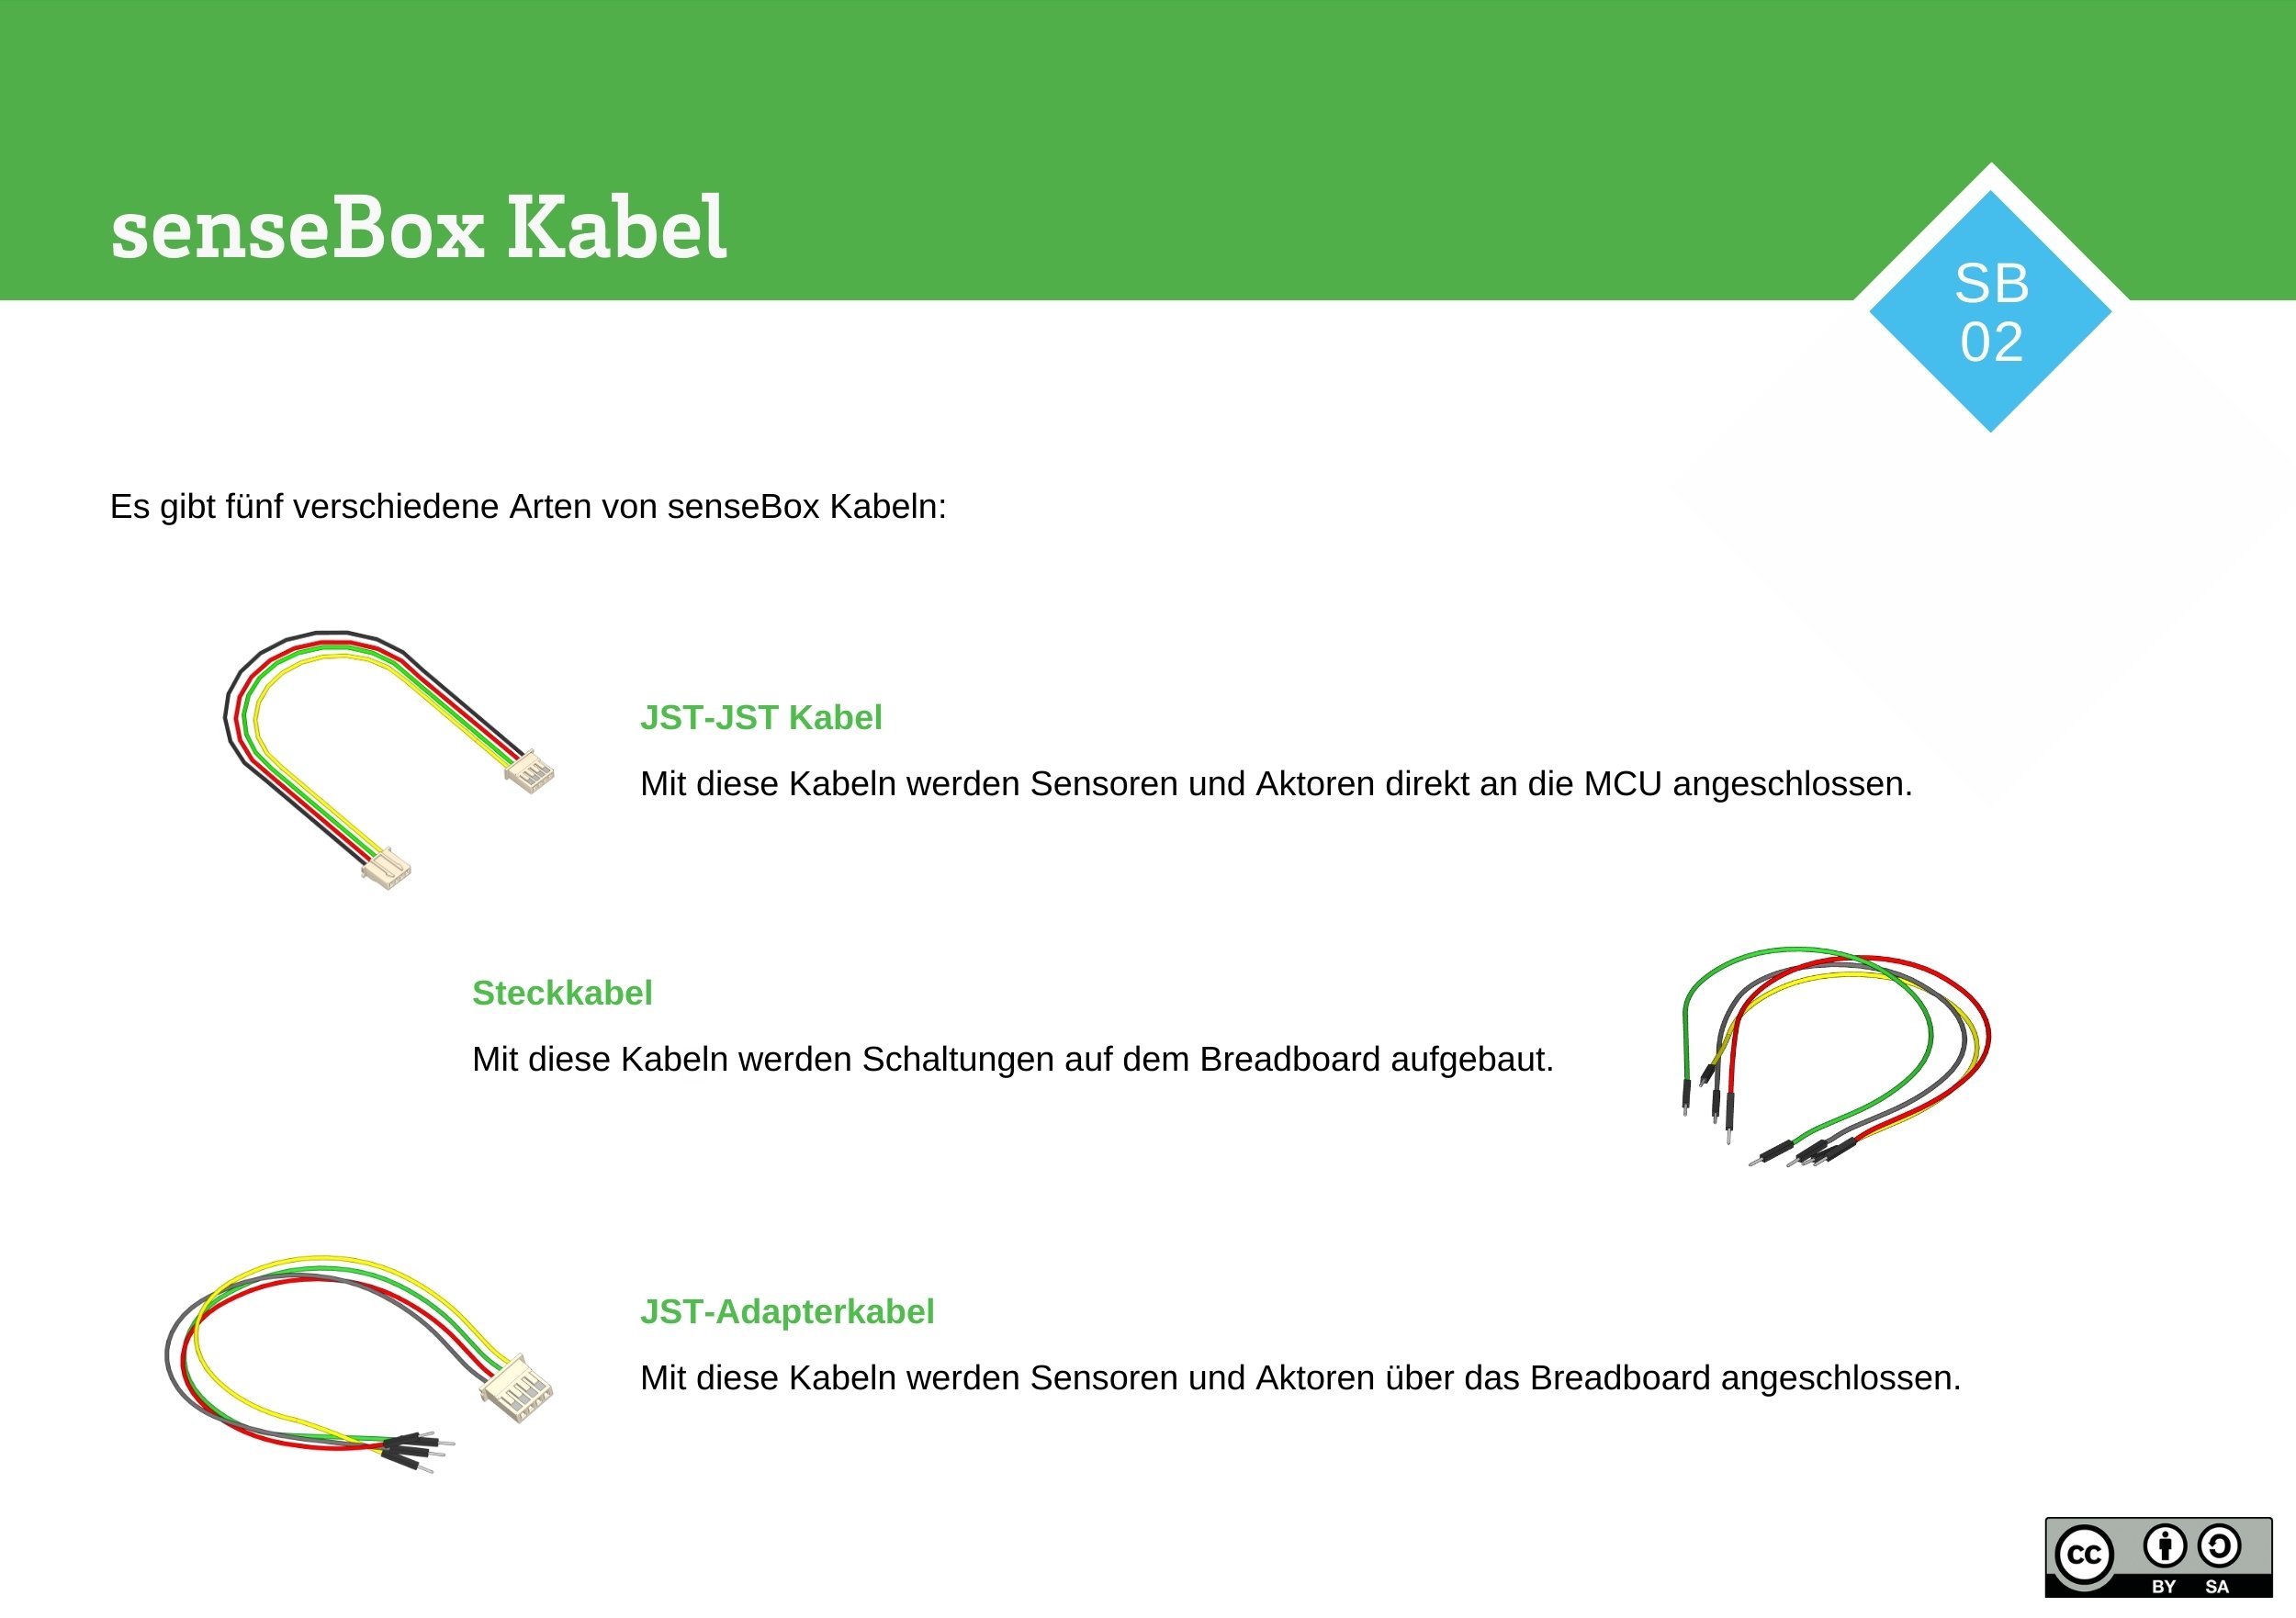 senseBox Kabel